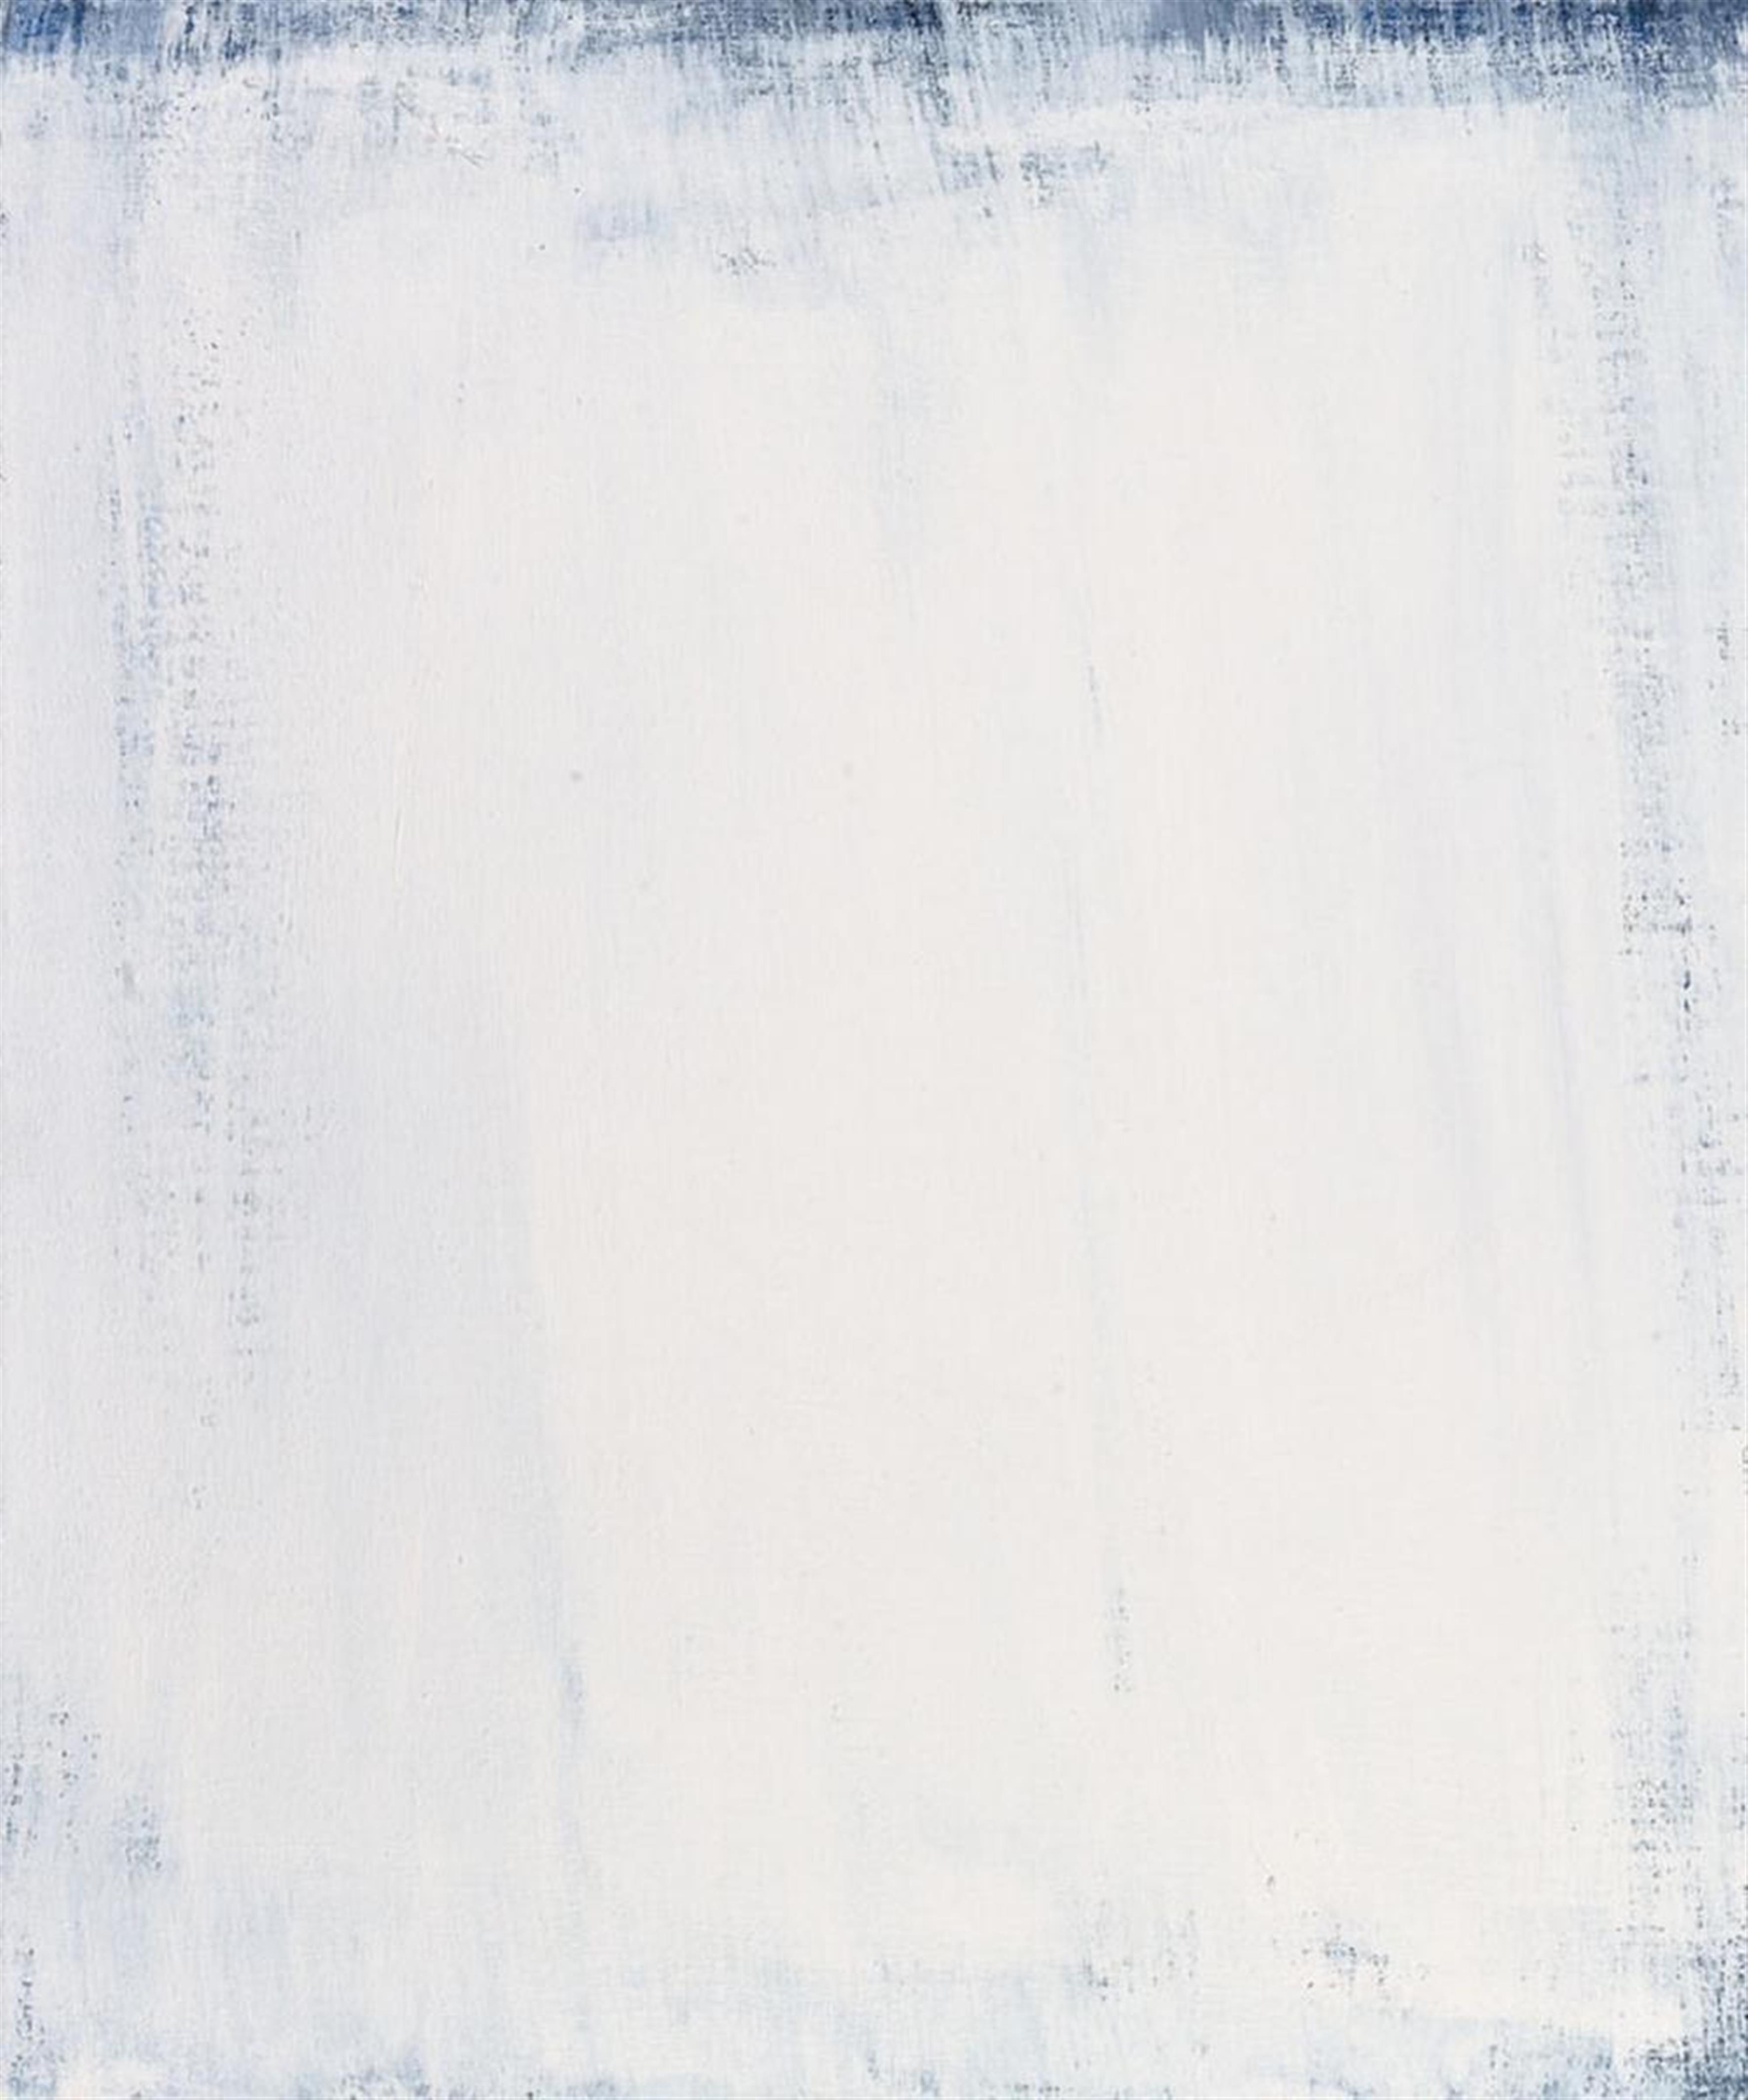 Raimund Girke - Weissraum (white space) - image-1